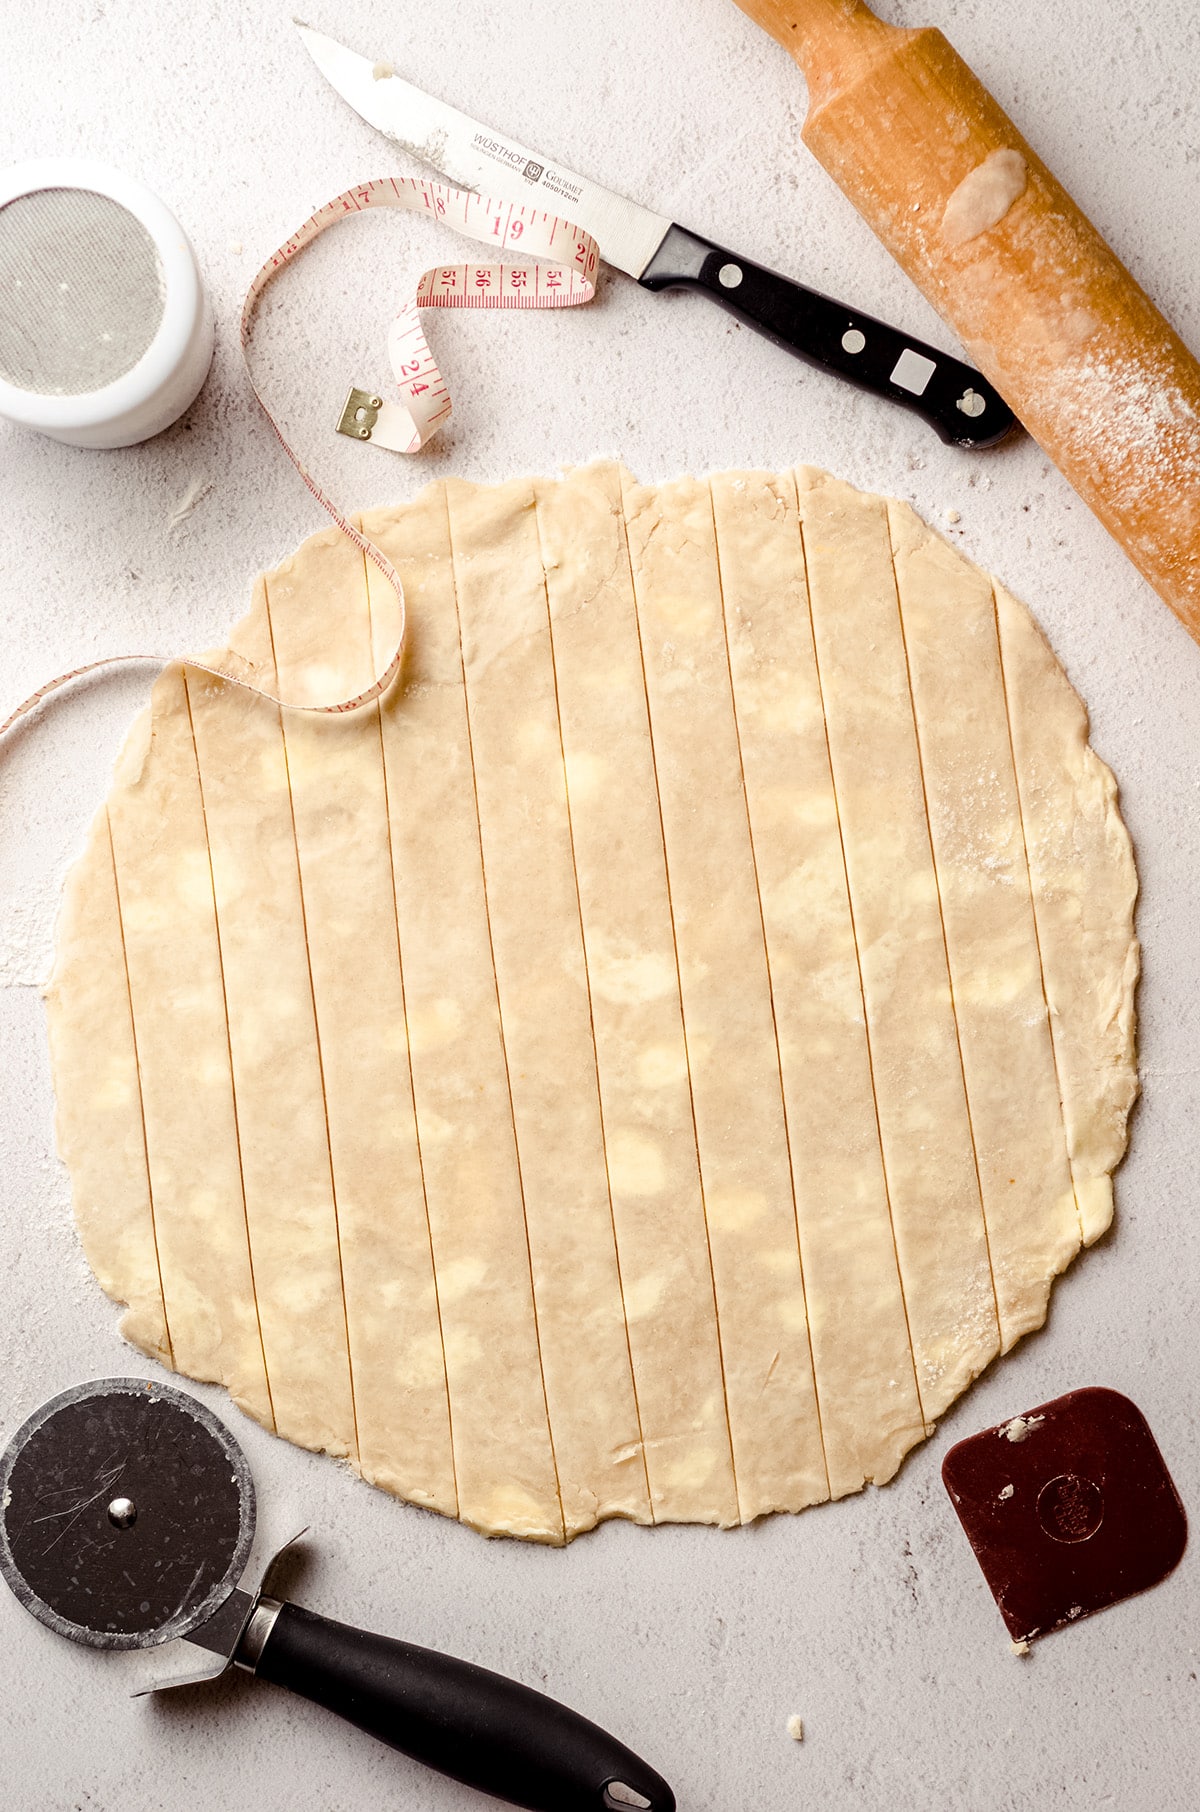 A circle of dough cut into pie dough strips.